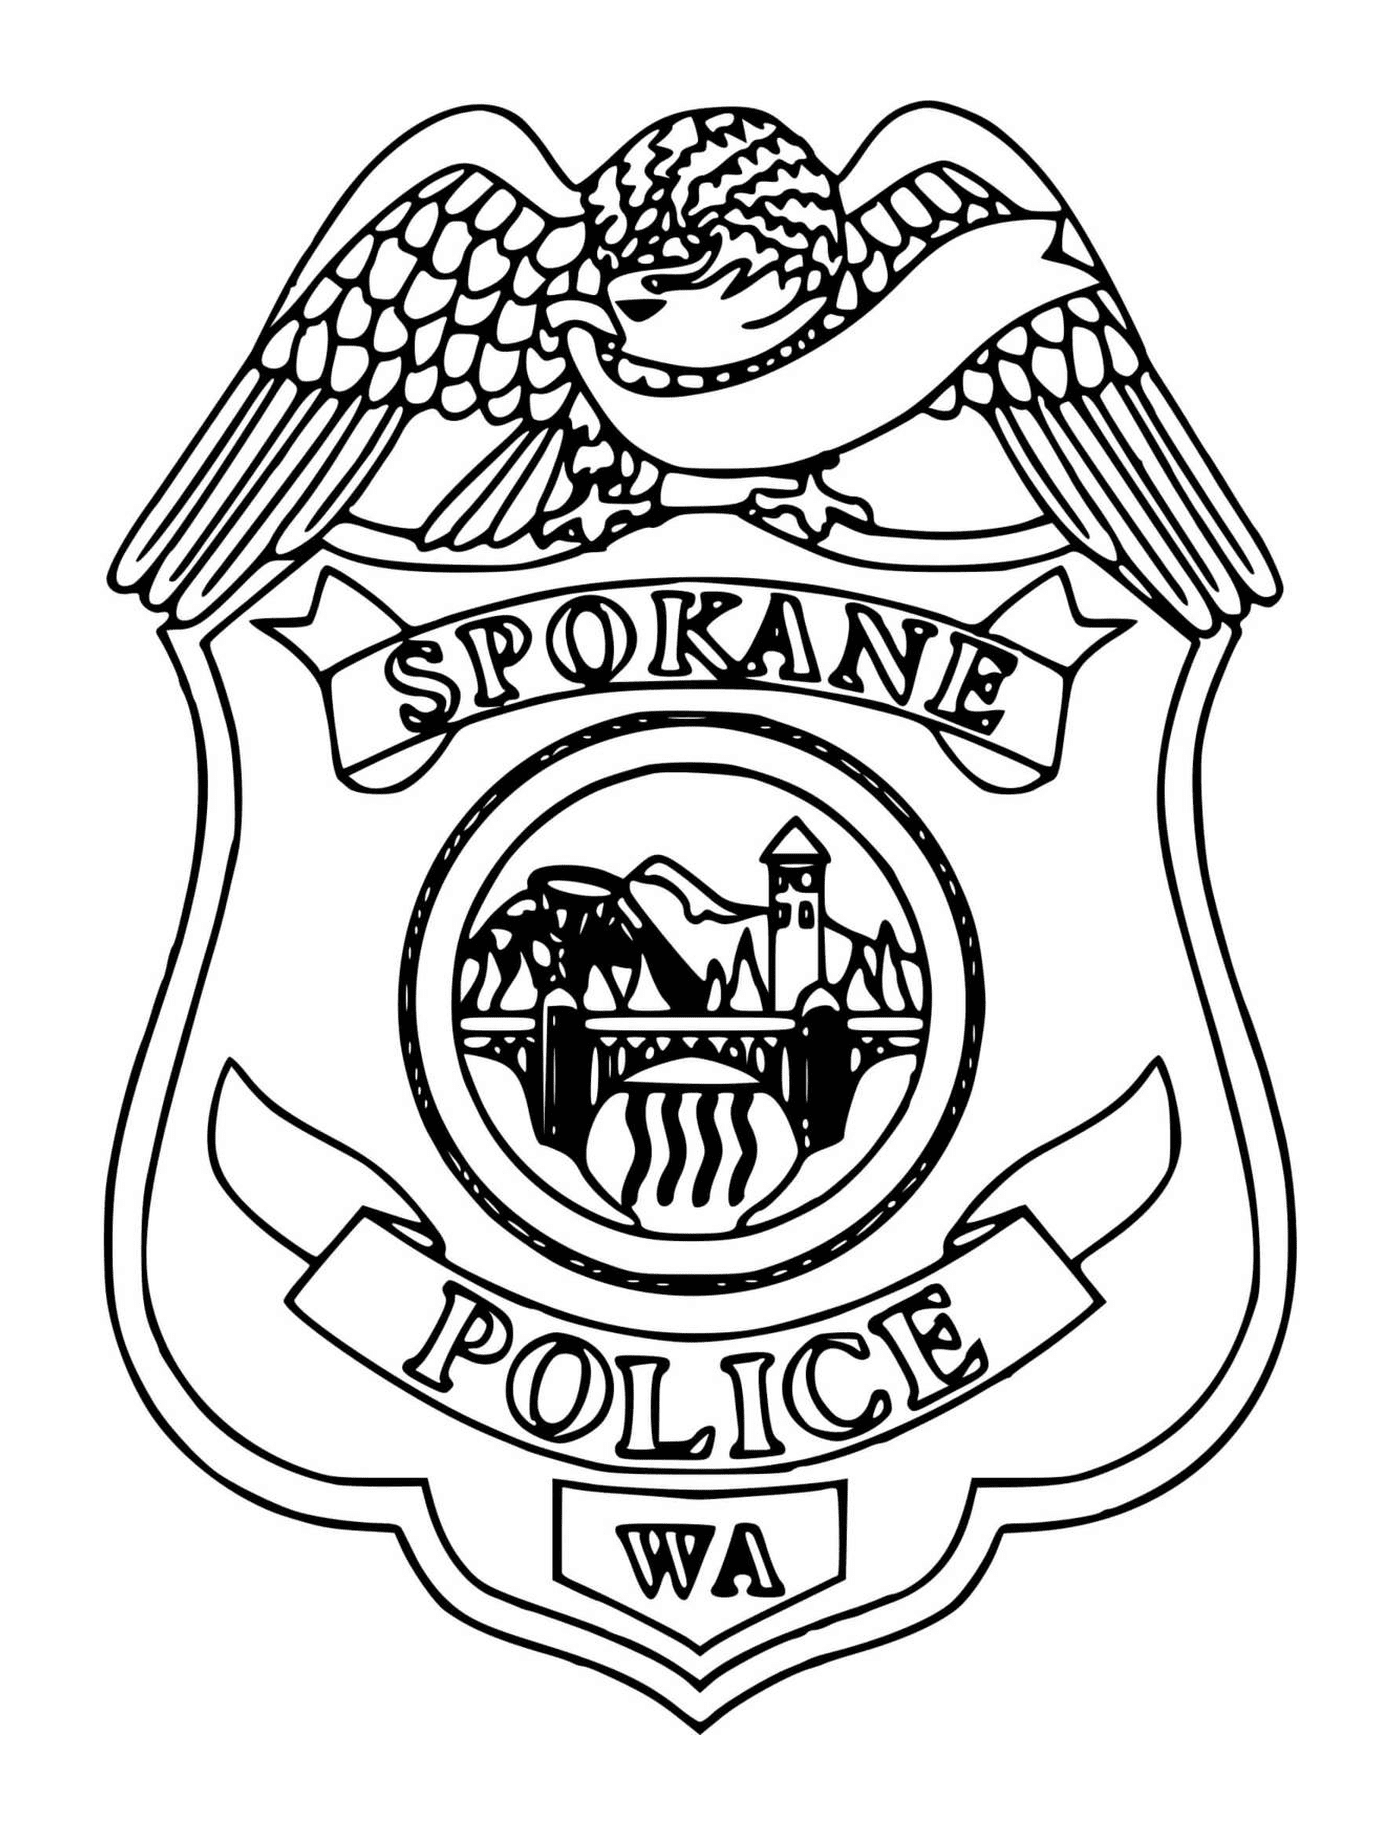  Distintivo della polizia di Spokane 